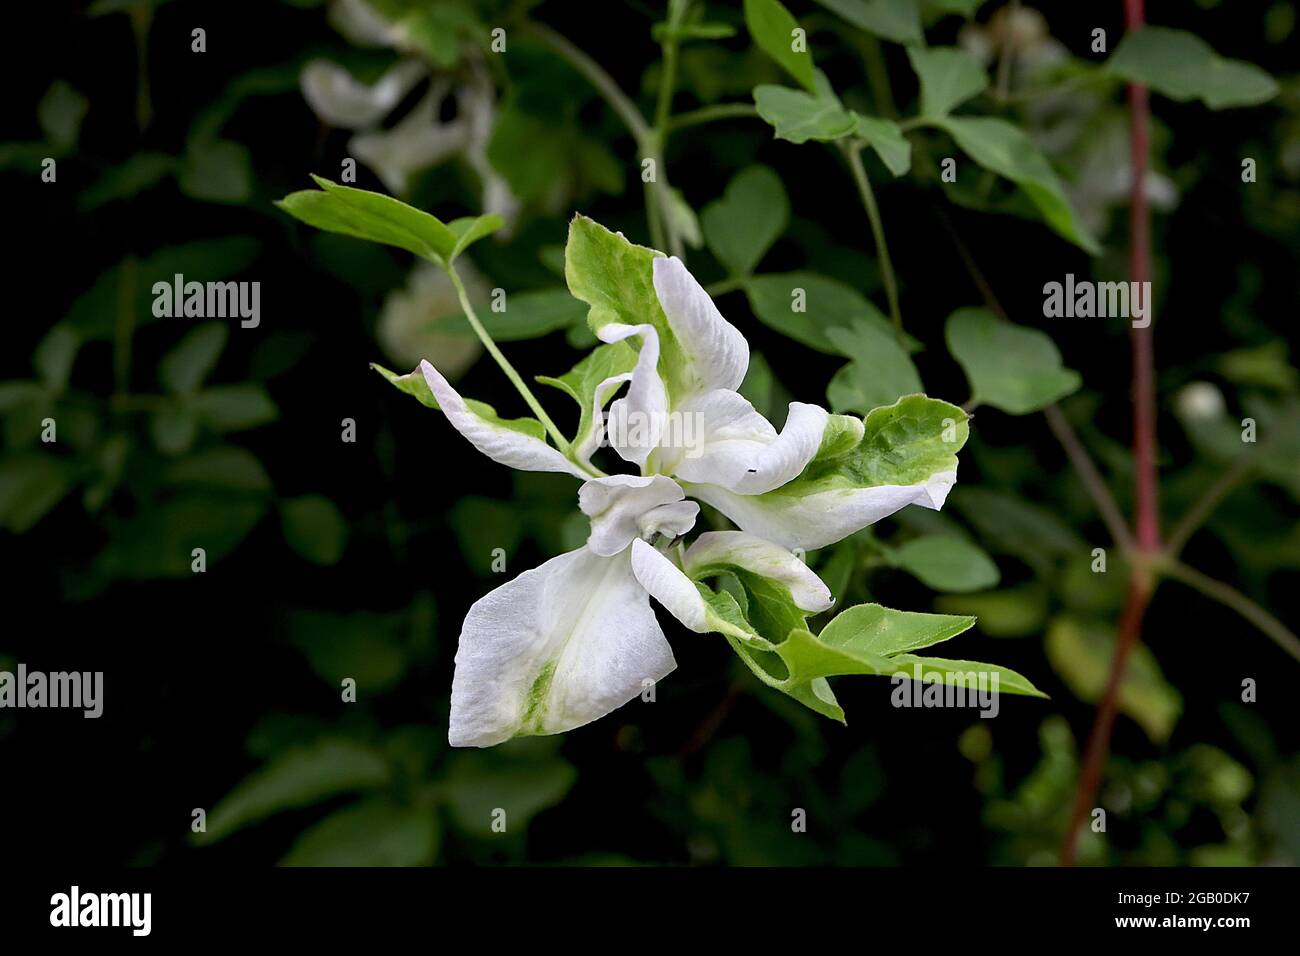 Clematis ‘Alba luxurians’ Clématis blanc aux pétales torsadés et aux touches vertes, juin, Angleterre, Royaume-Uni Banque D'Images